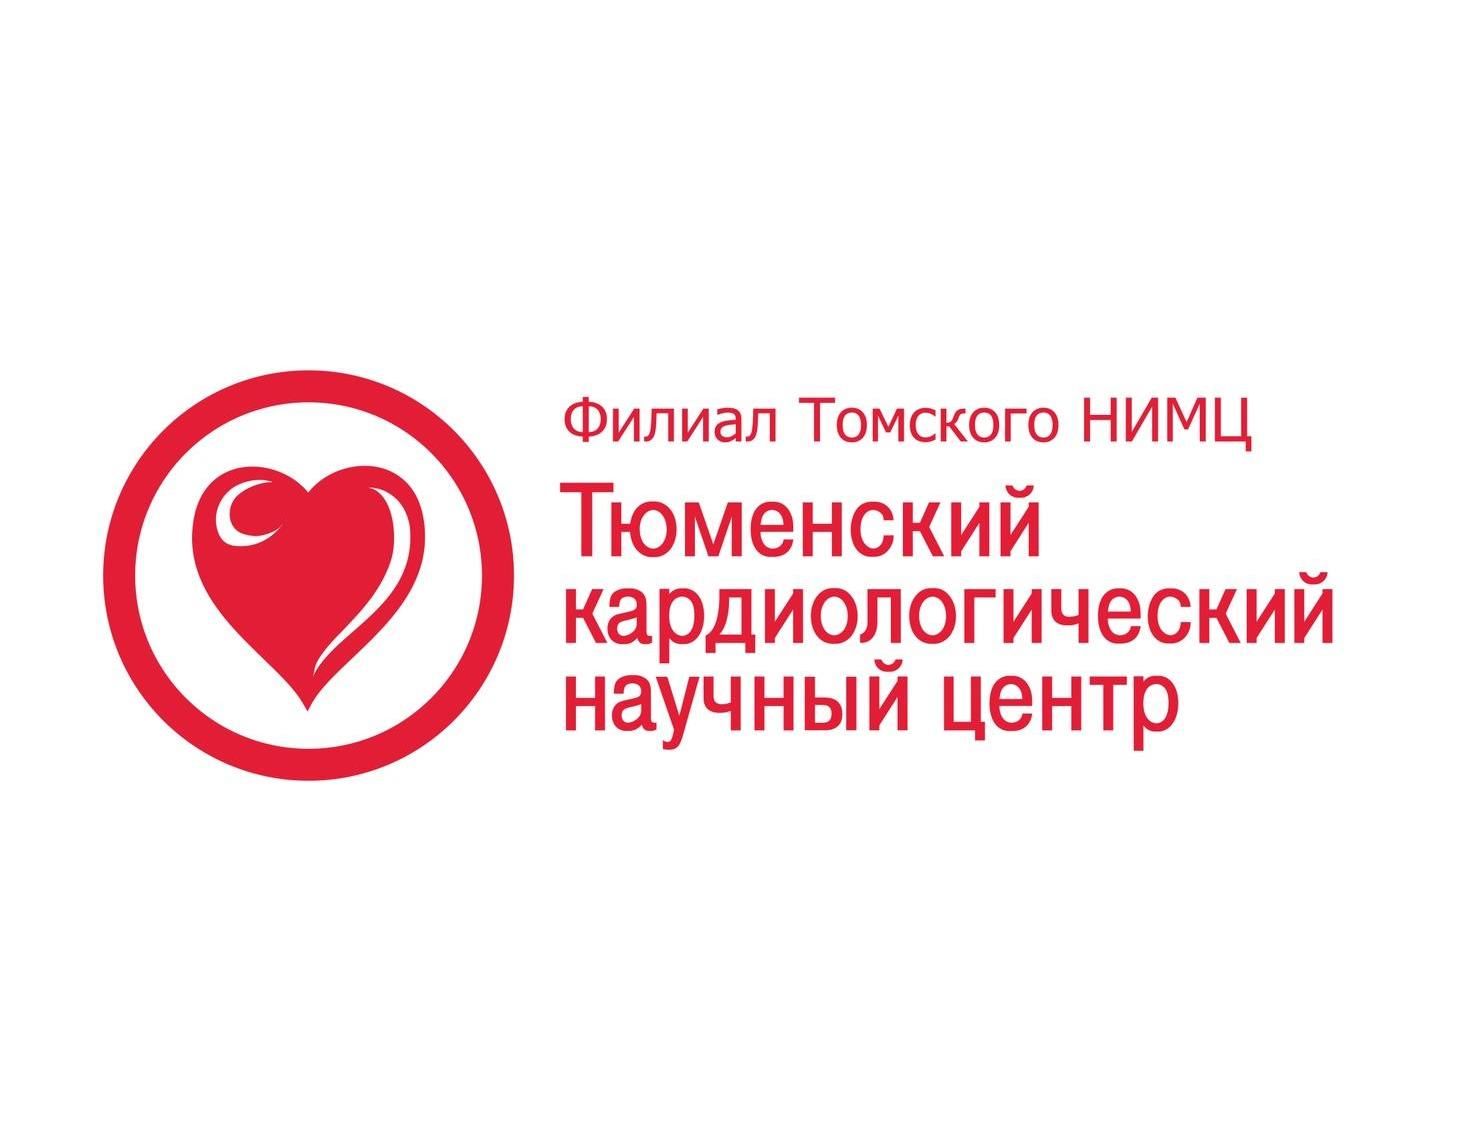 21 Европейский конгресс по артериальной гипертонии и профилактике сердечно-сосудистых заболеваний